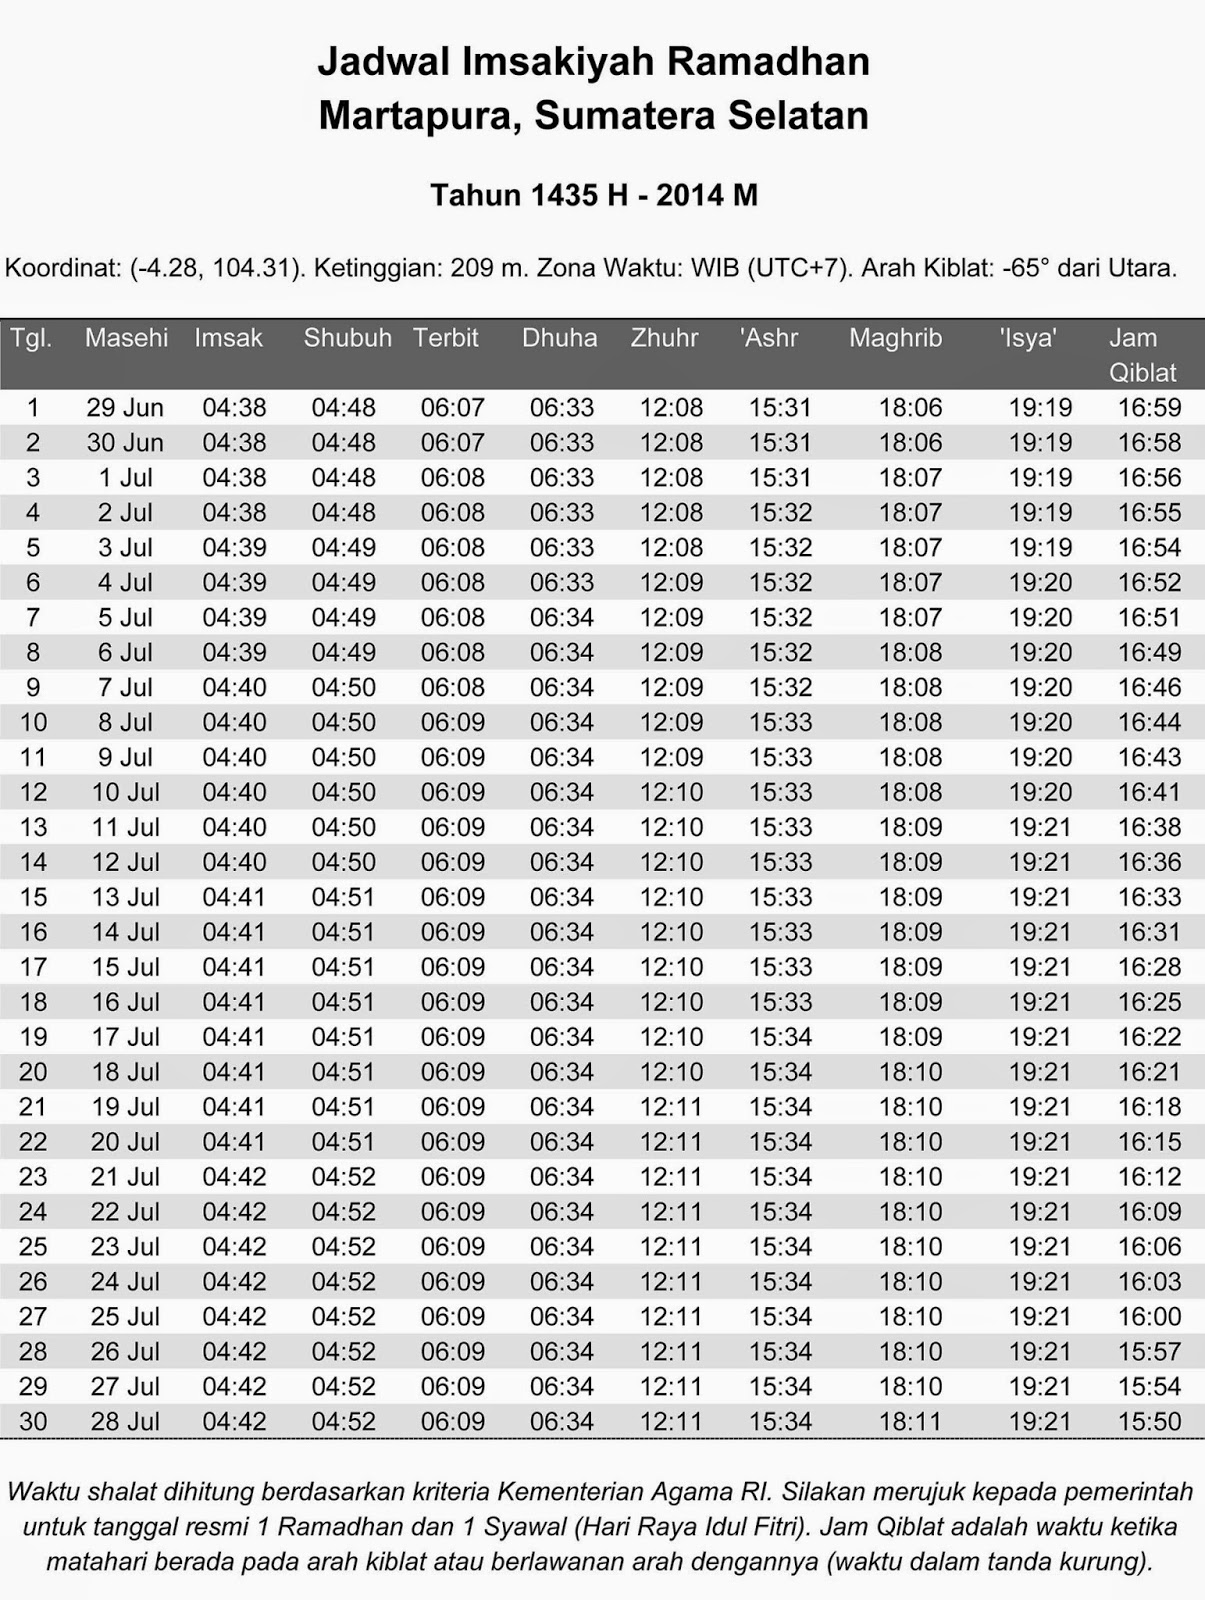 Jadwal Imsakiyah Puasa Ramadhan 1435H/2014 Wilayah 